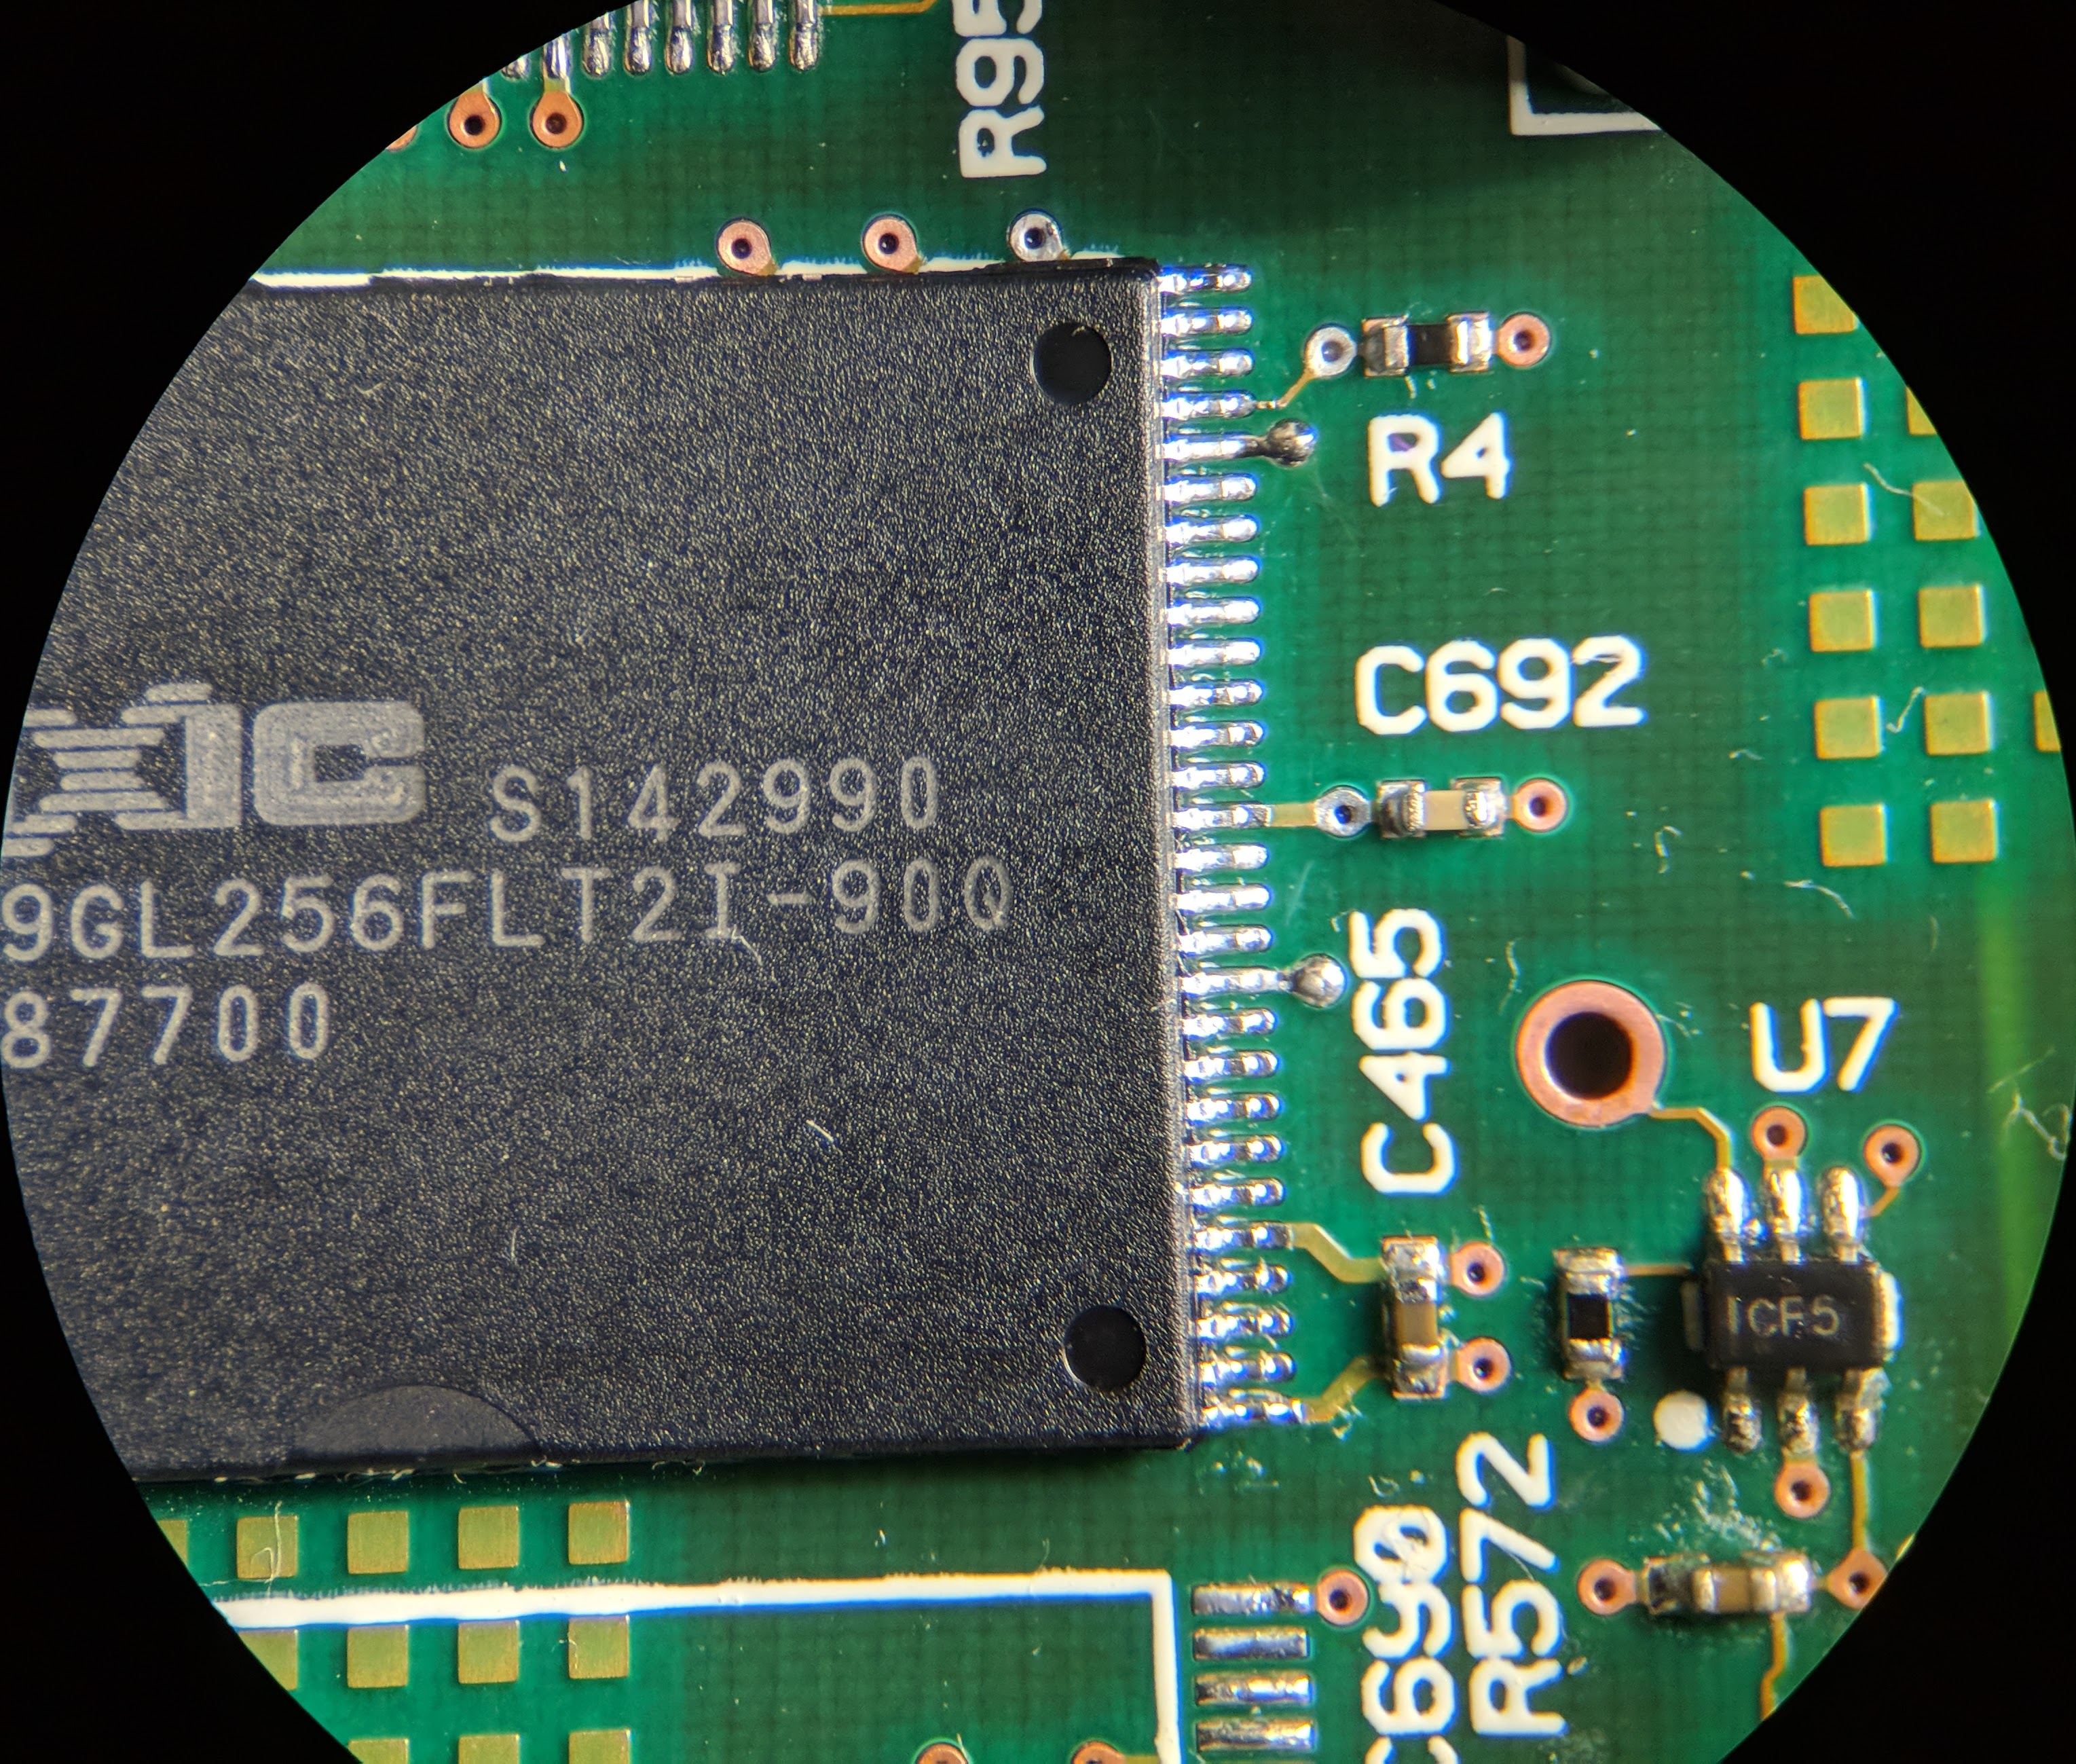 MX29GL256FLT2I-90Q_drag_soldered_clean_flux.jpg